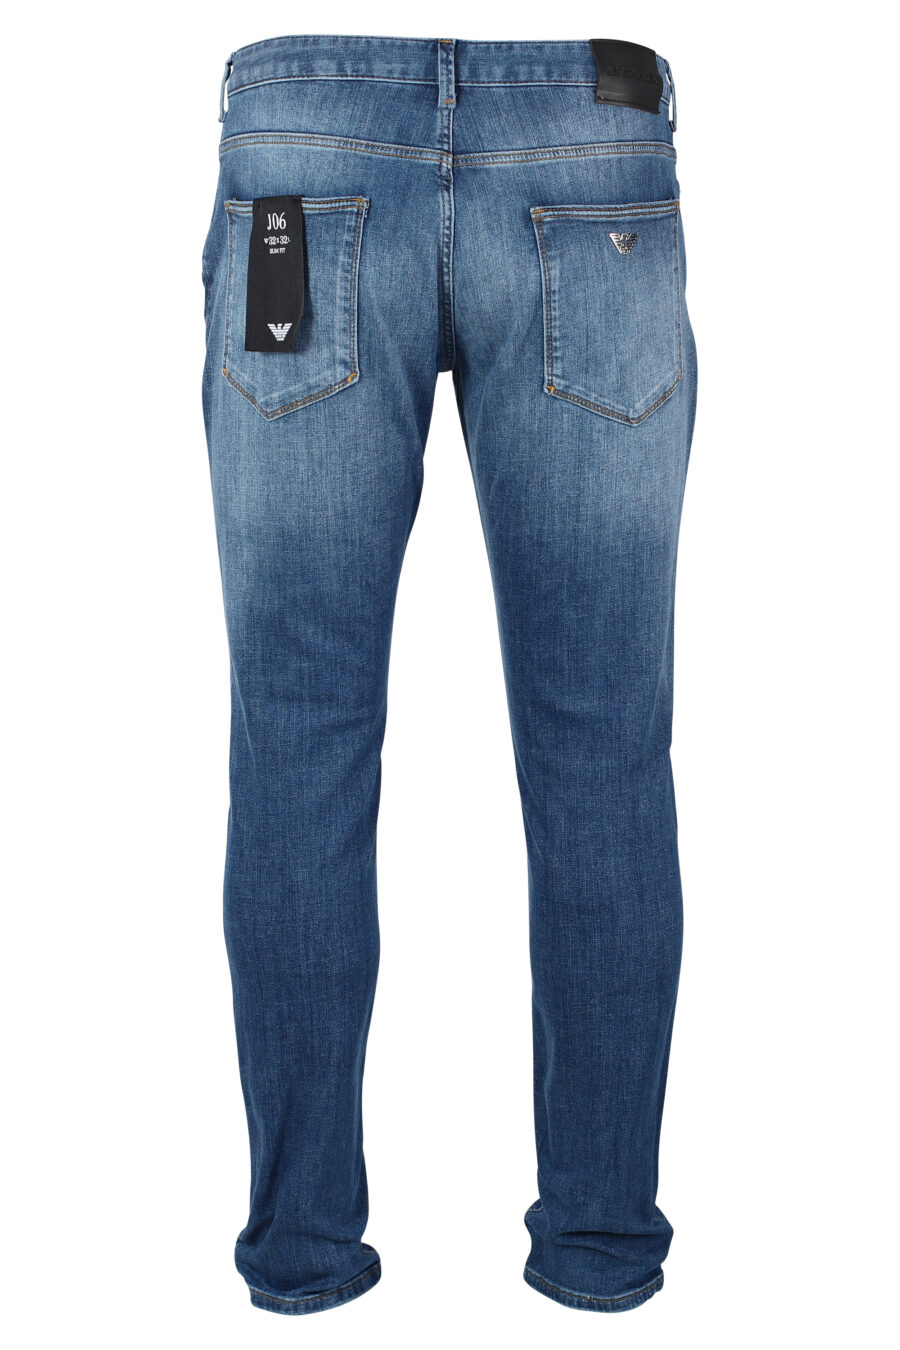 Pantalón vaquero azul con minilogo metal - IMG 9924 1